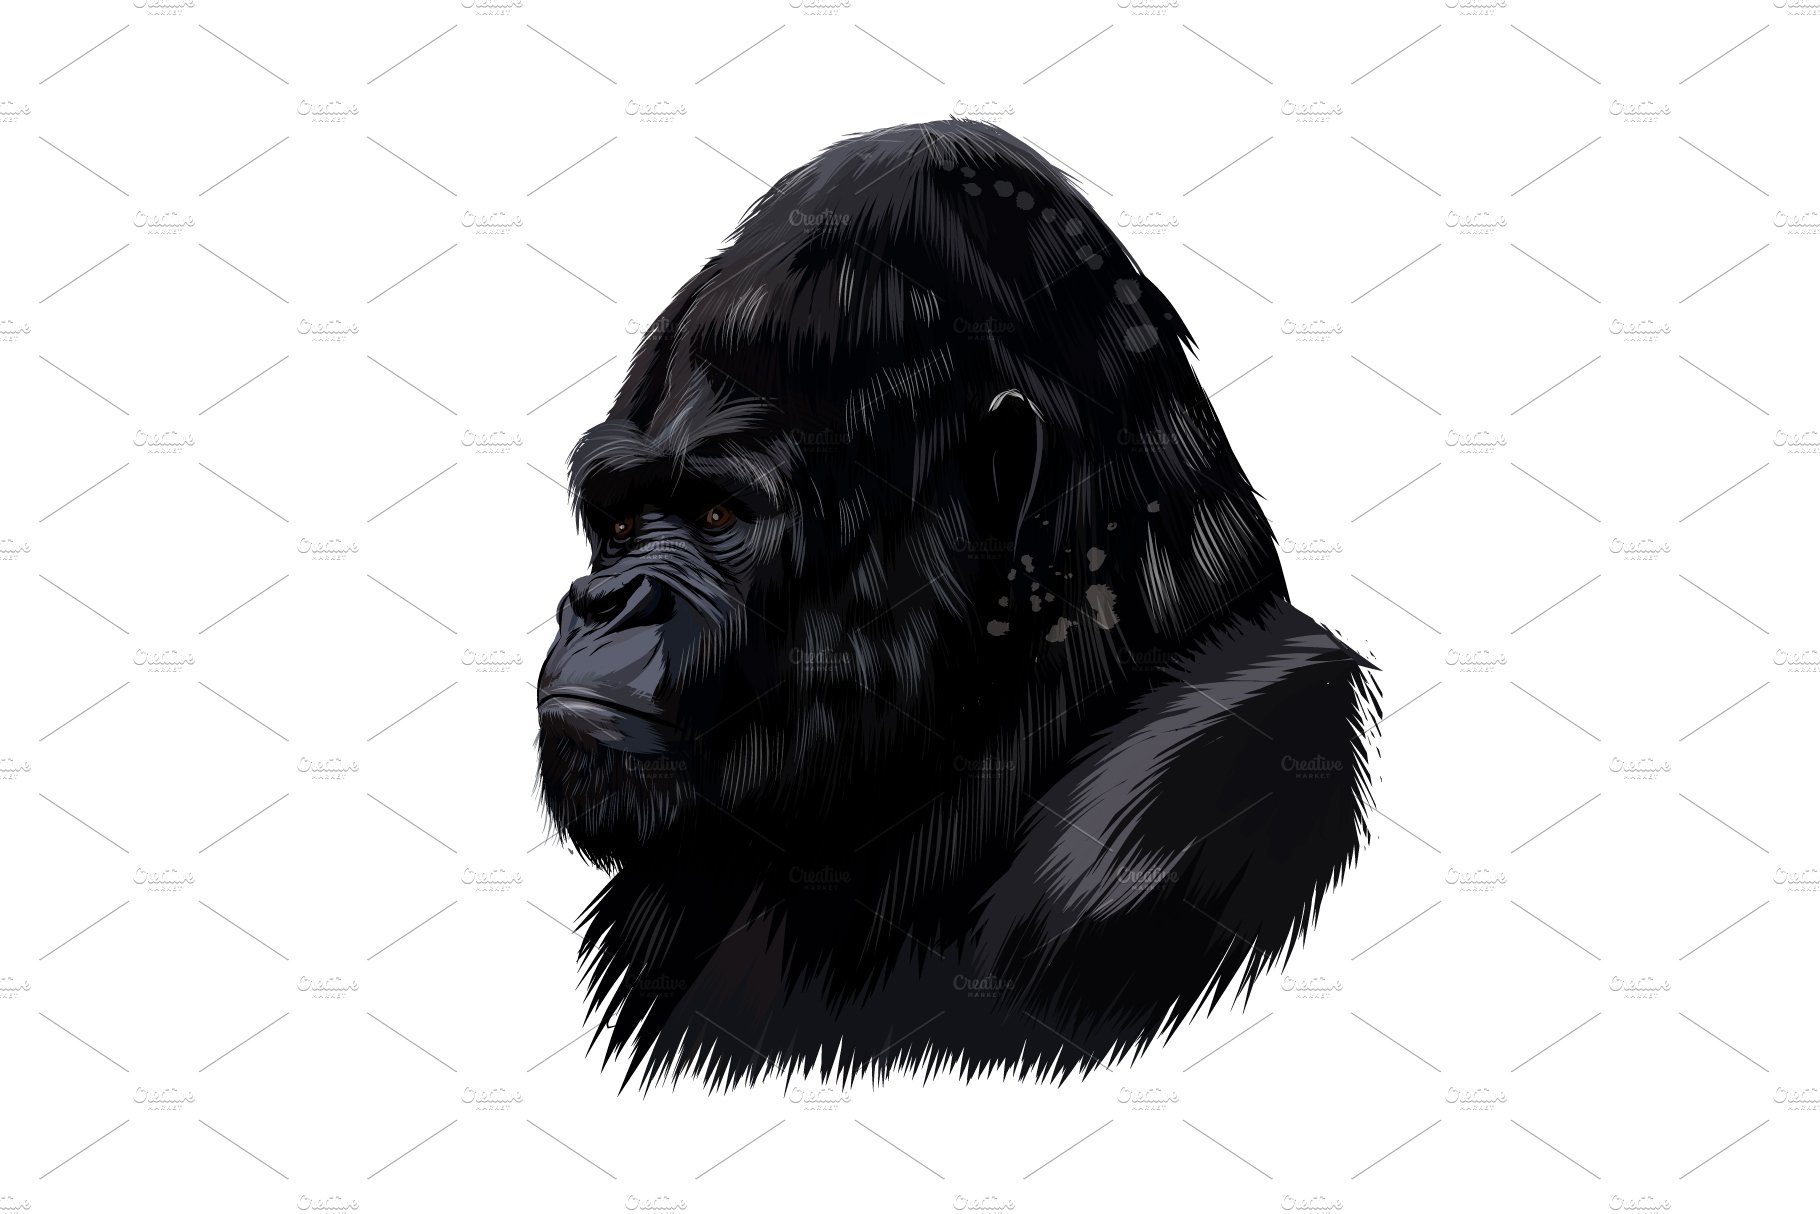 Gorilla head portrait cover image.